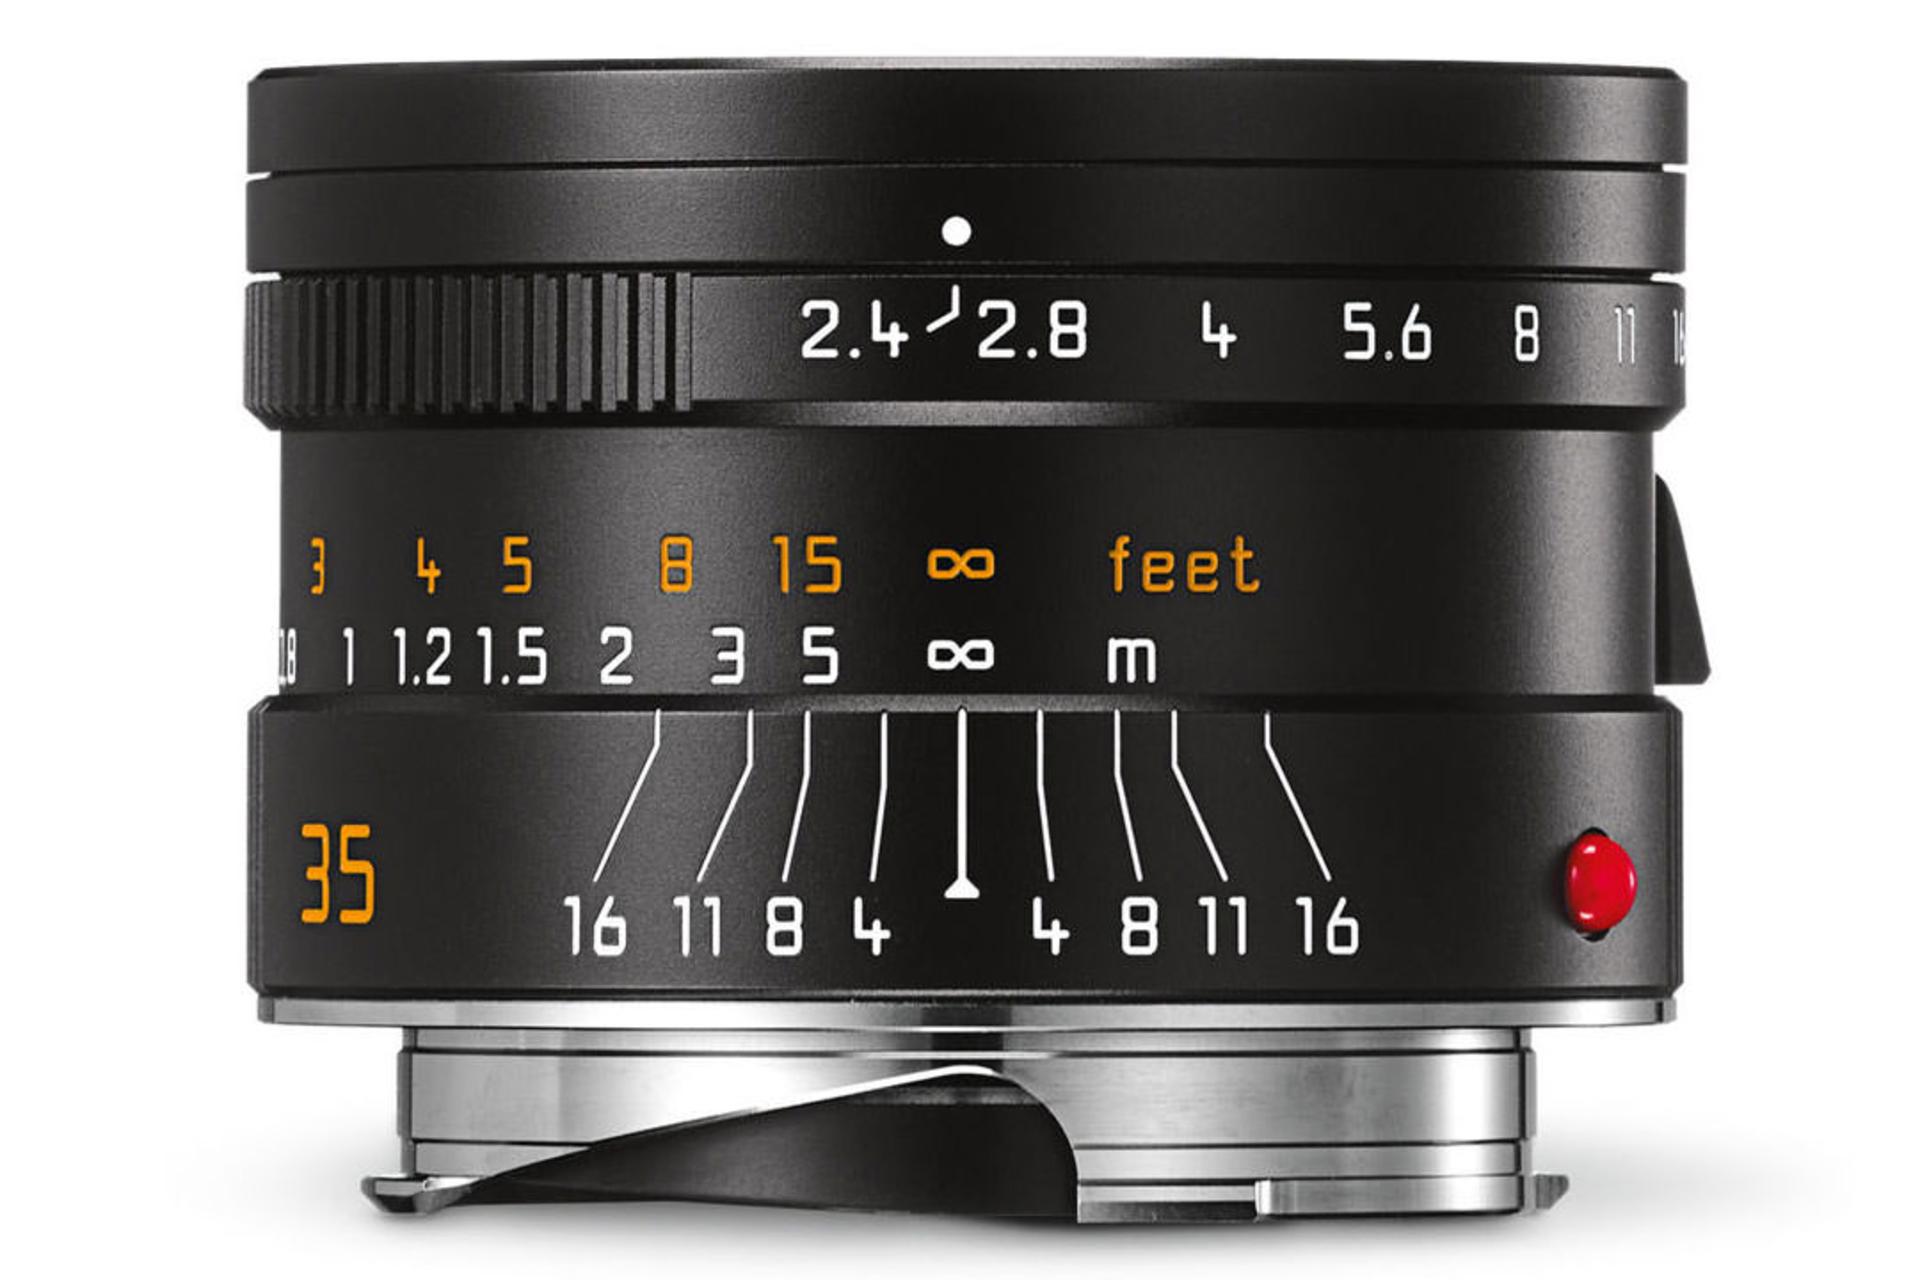 Leica Summarit-M 35mm F2.4 ASPH	